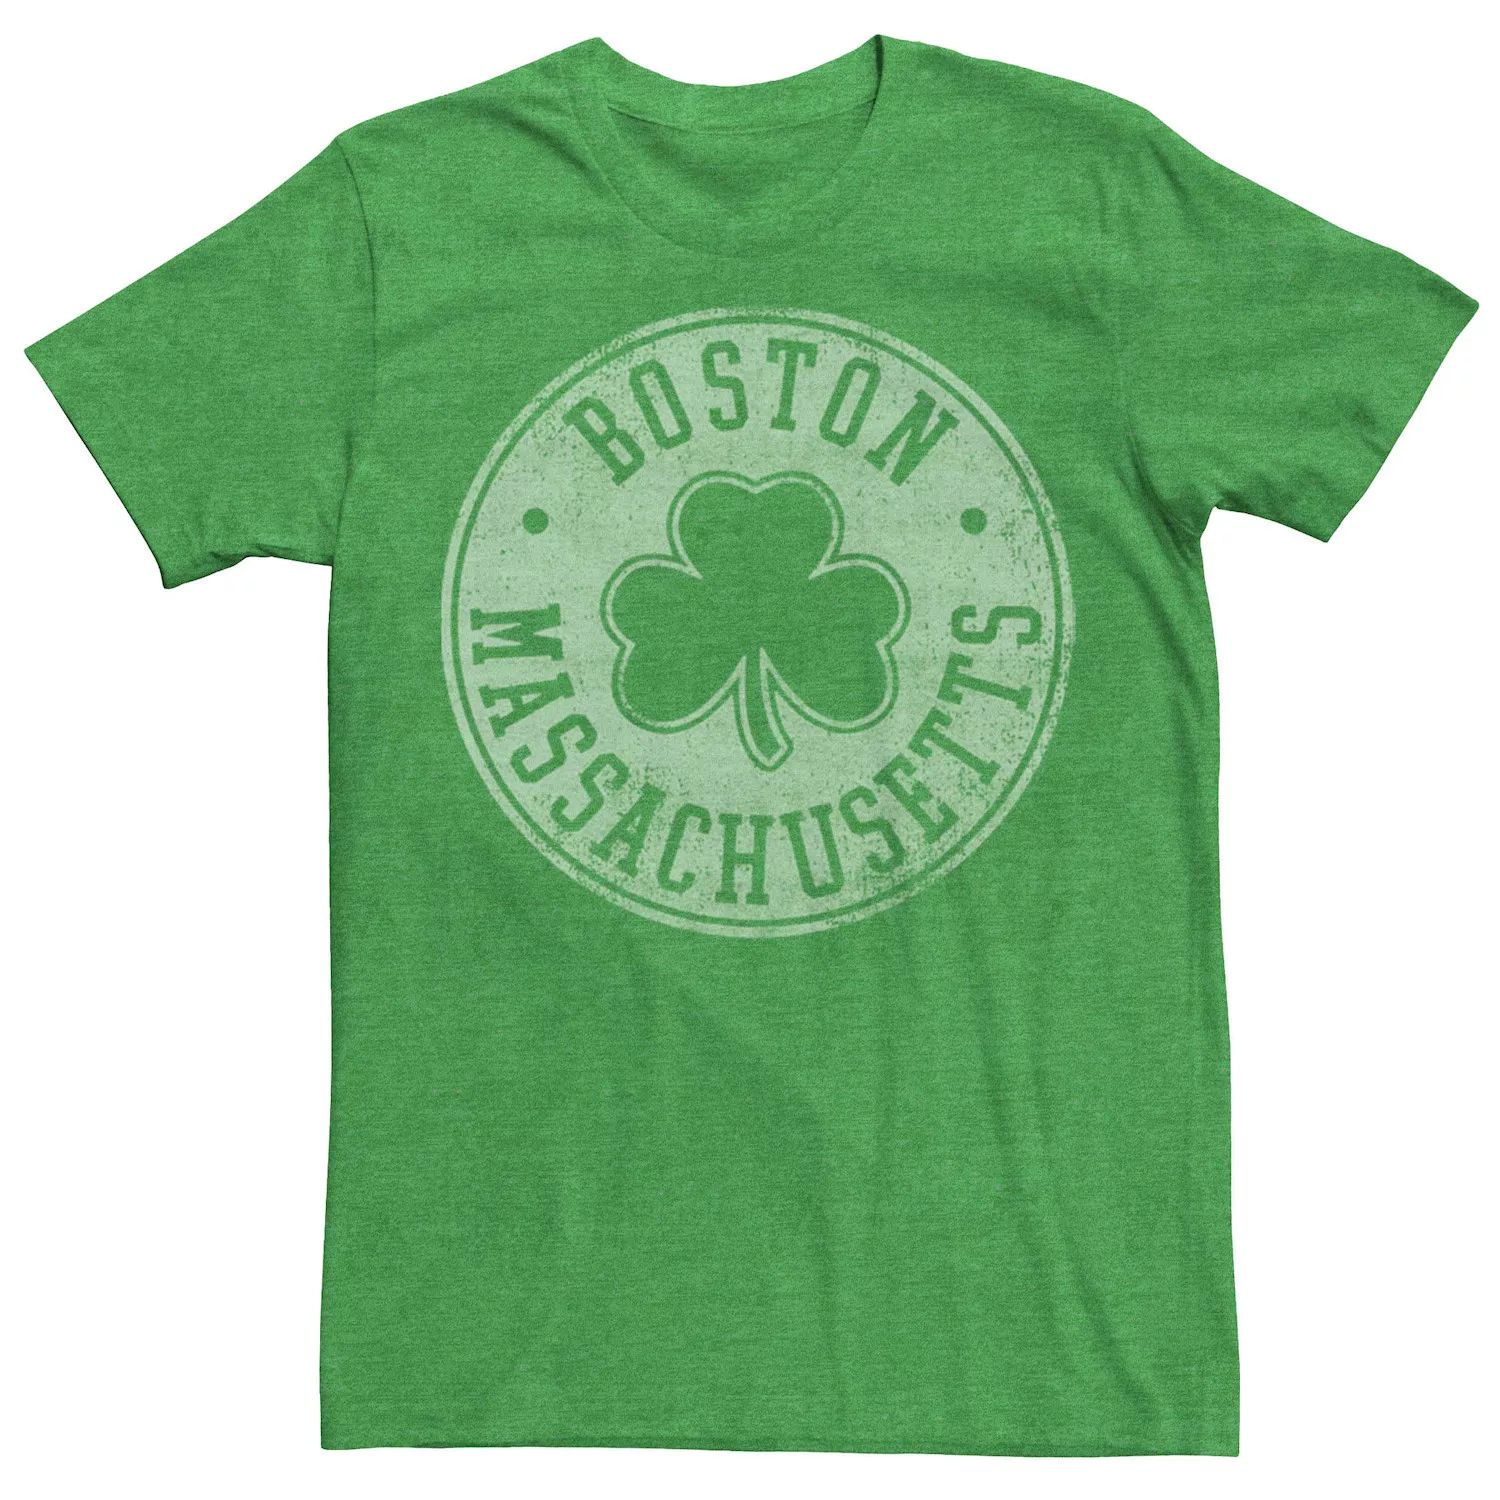 Мужская футболка с логотипом Boston Massachusetts Shamrock Licensed Character